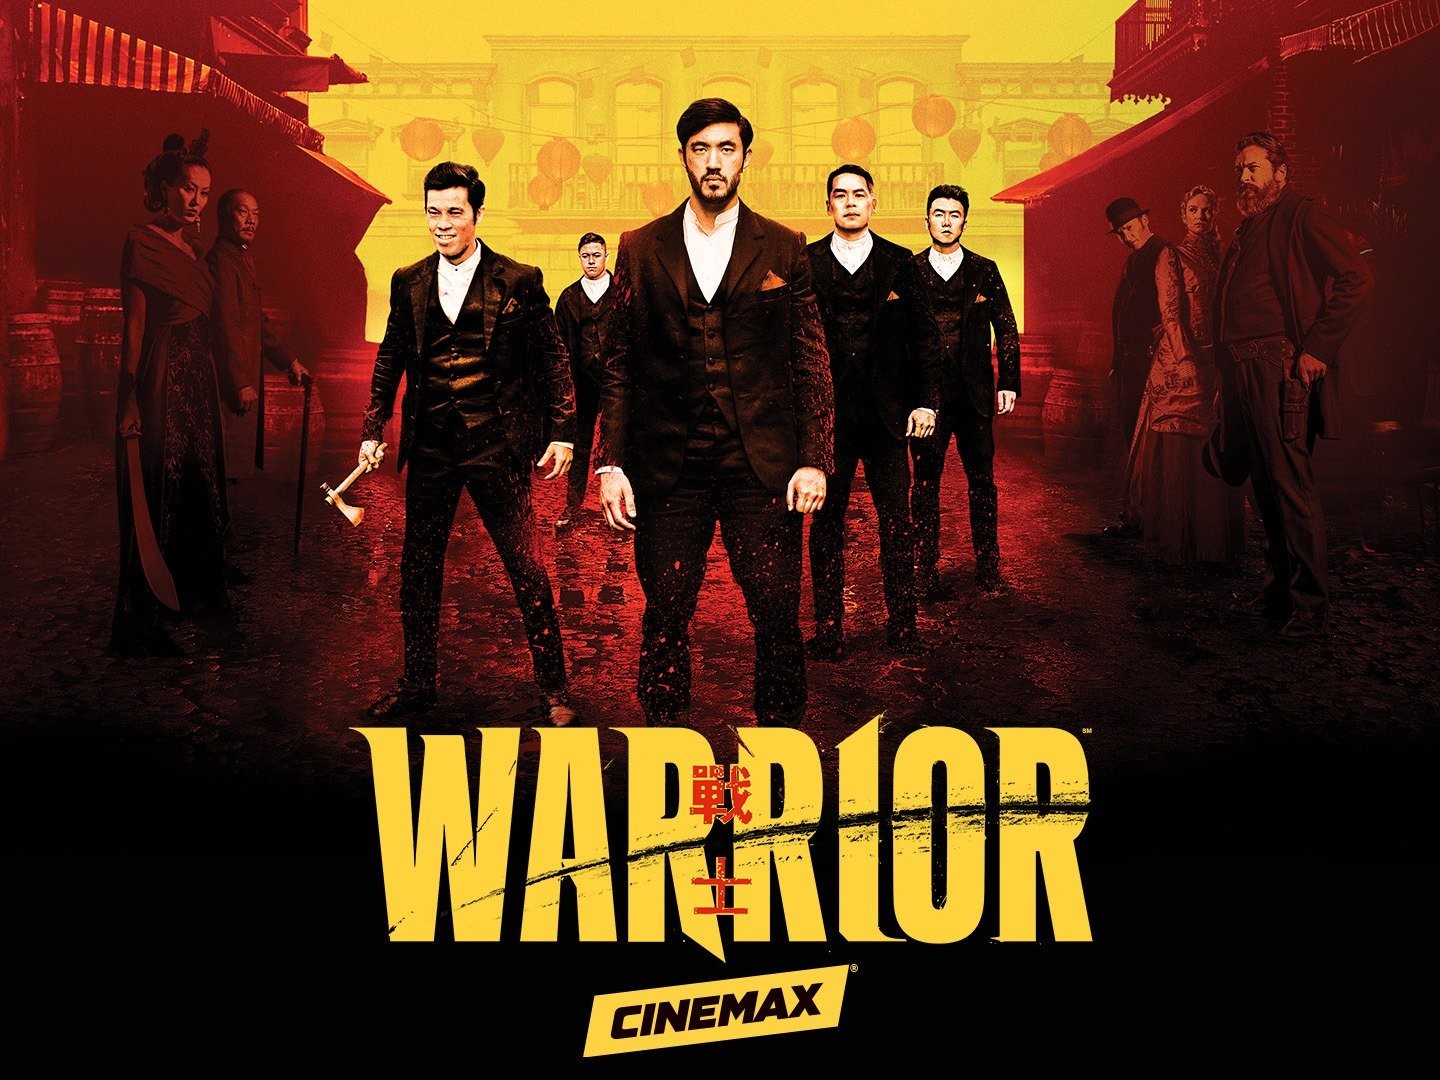 Warrior Season 4 Release Date, Trailer, Cast